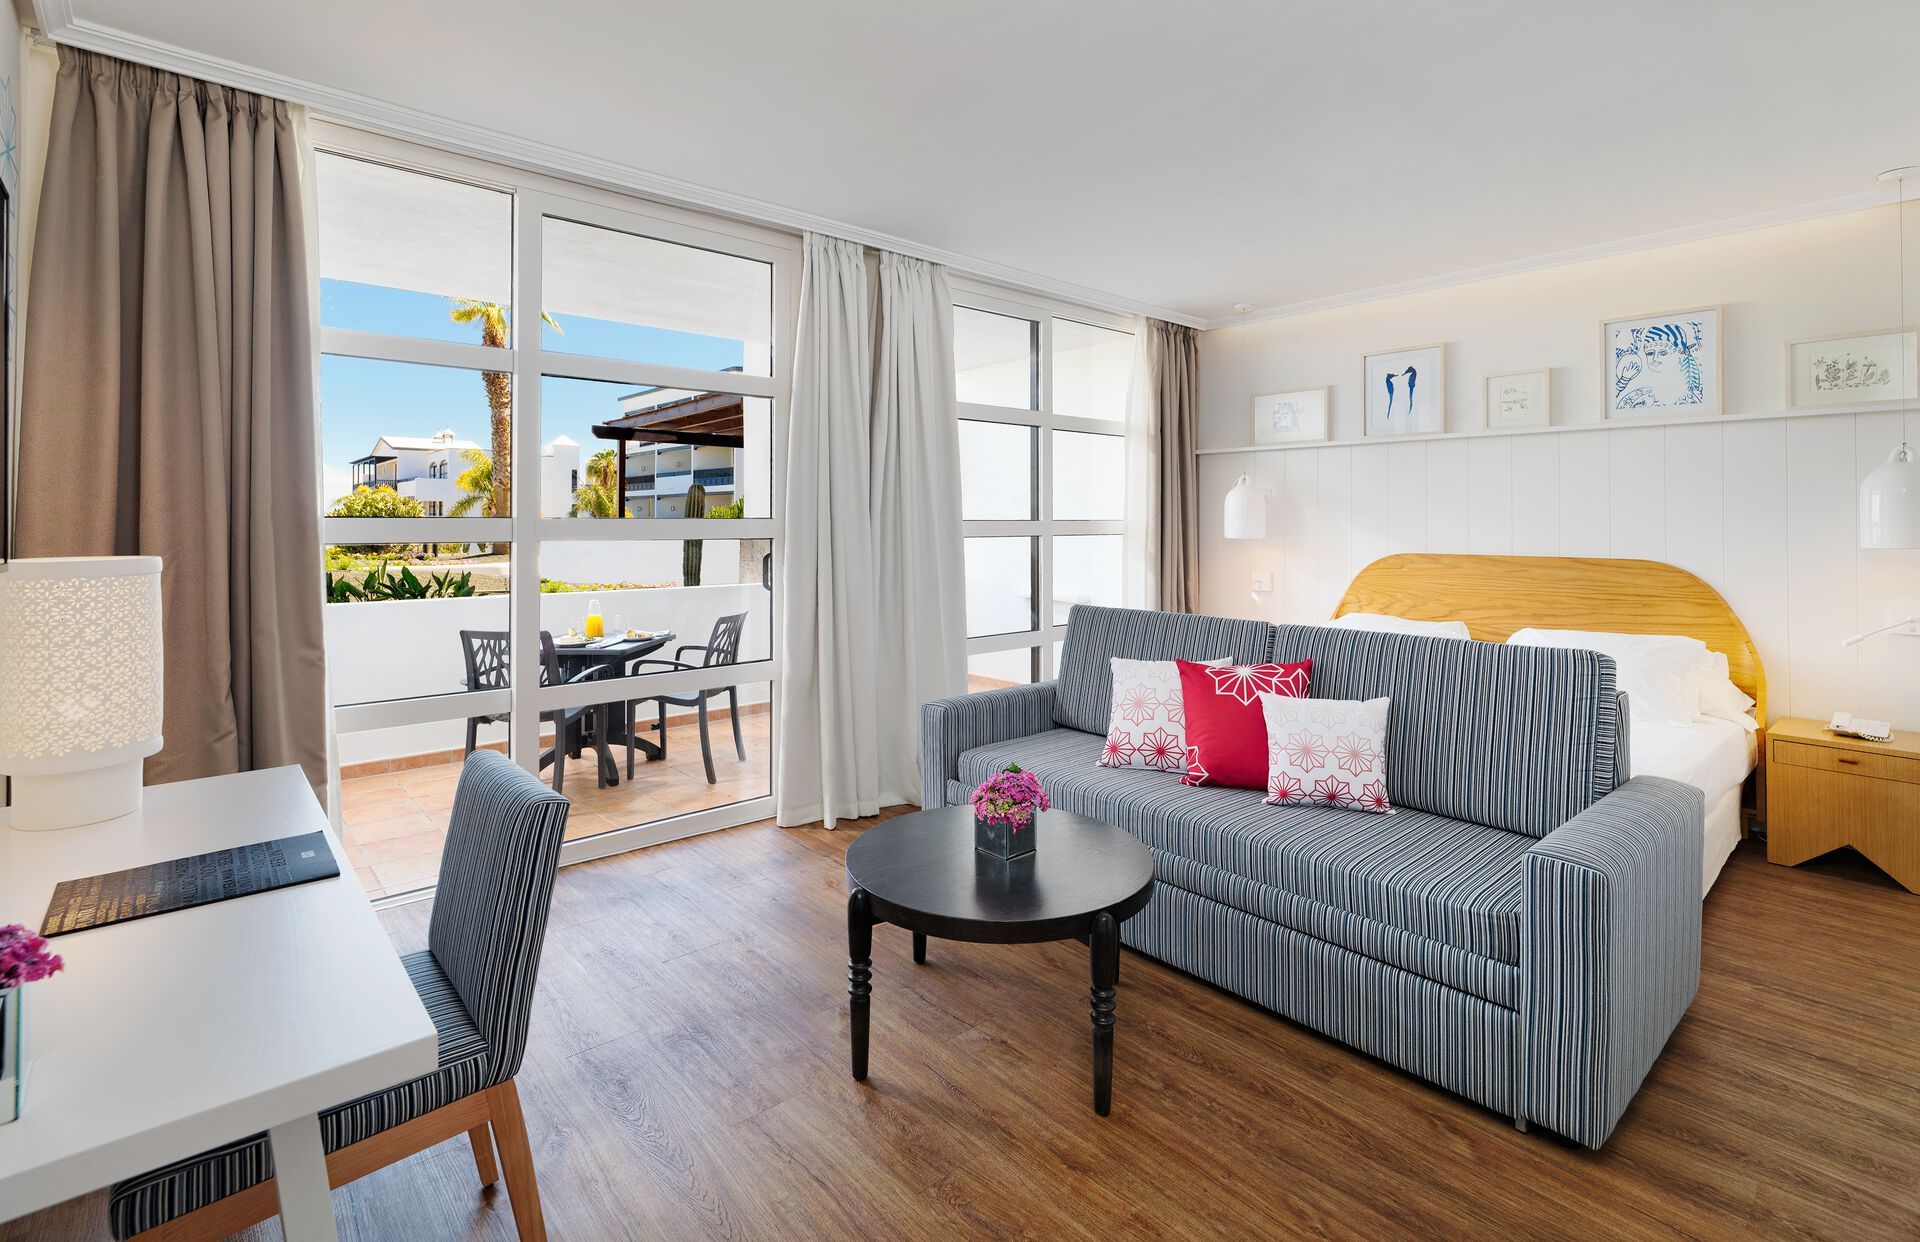 Canaries - Lanzarote - Espagne - Hôtel H10 Rubicón Palace 5*